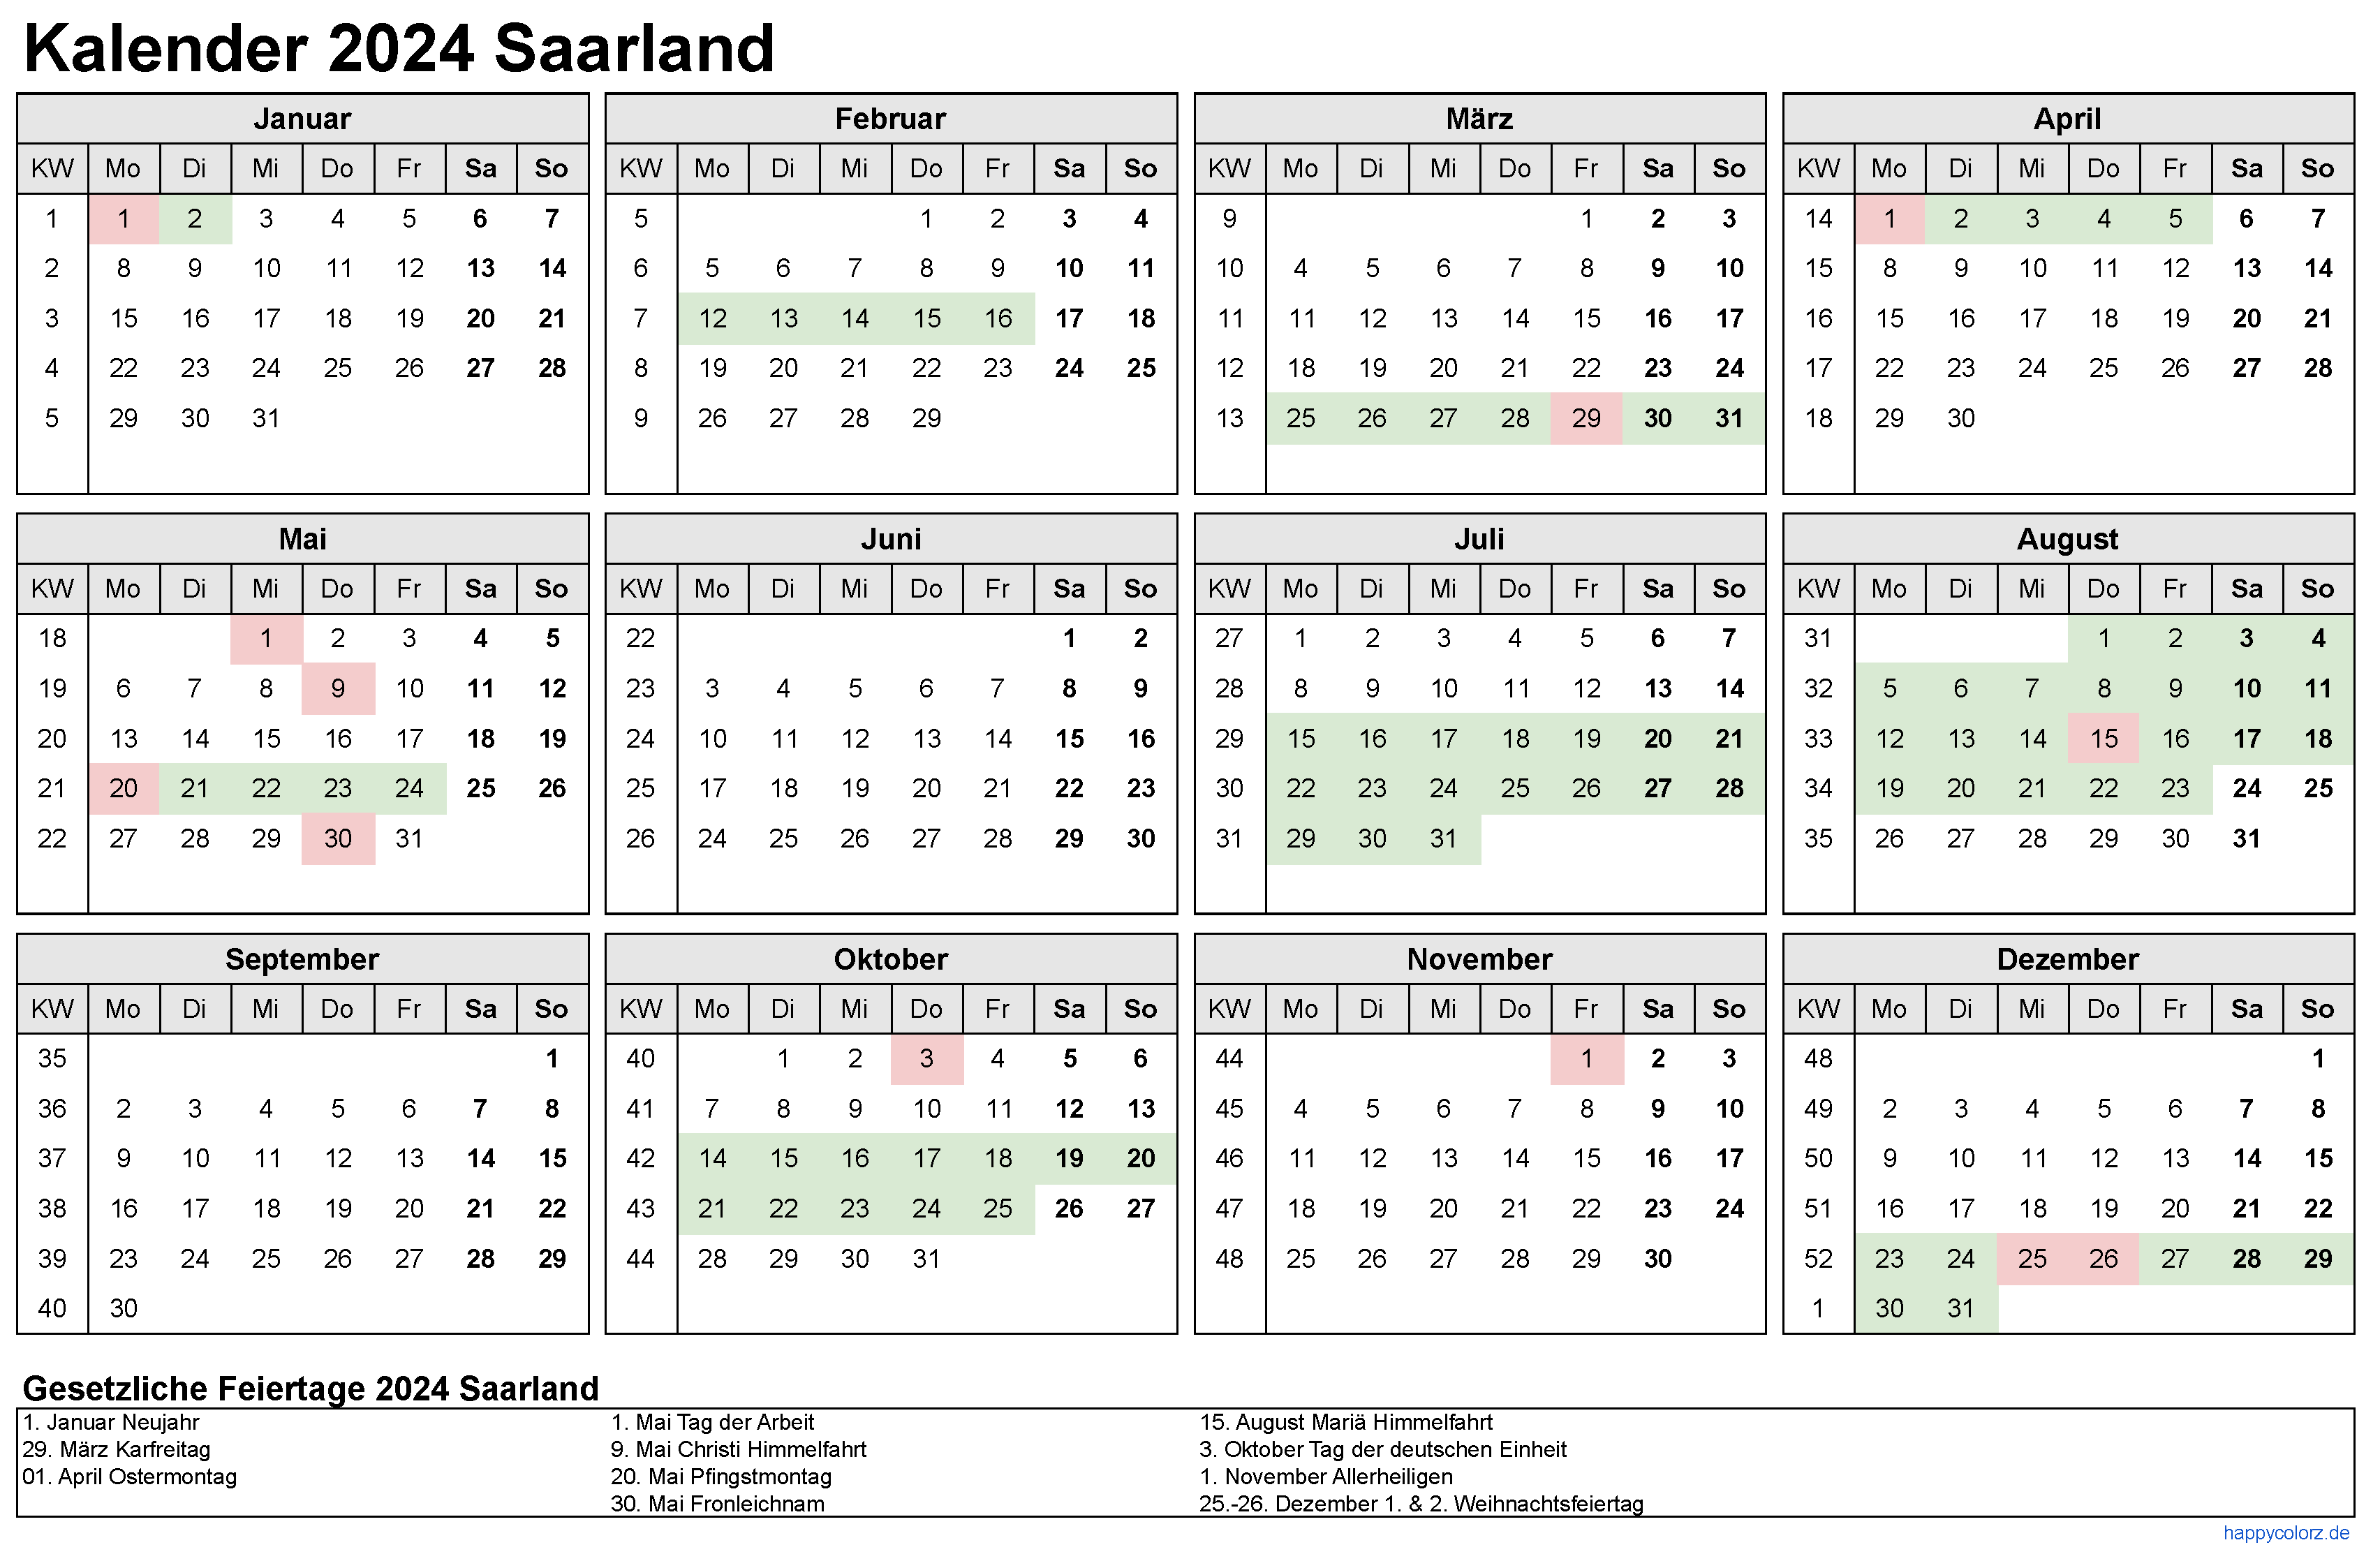 Kalender 2024 Saarland zum Ausdrucken